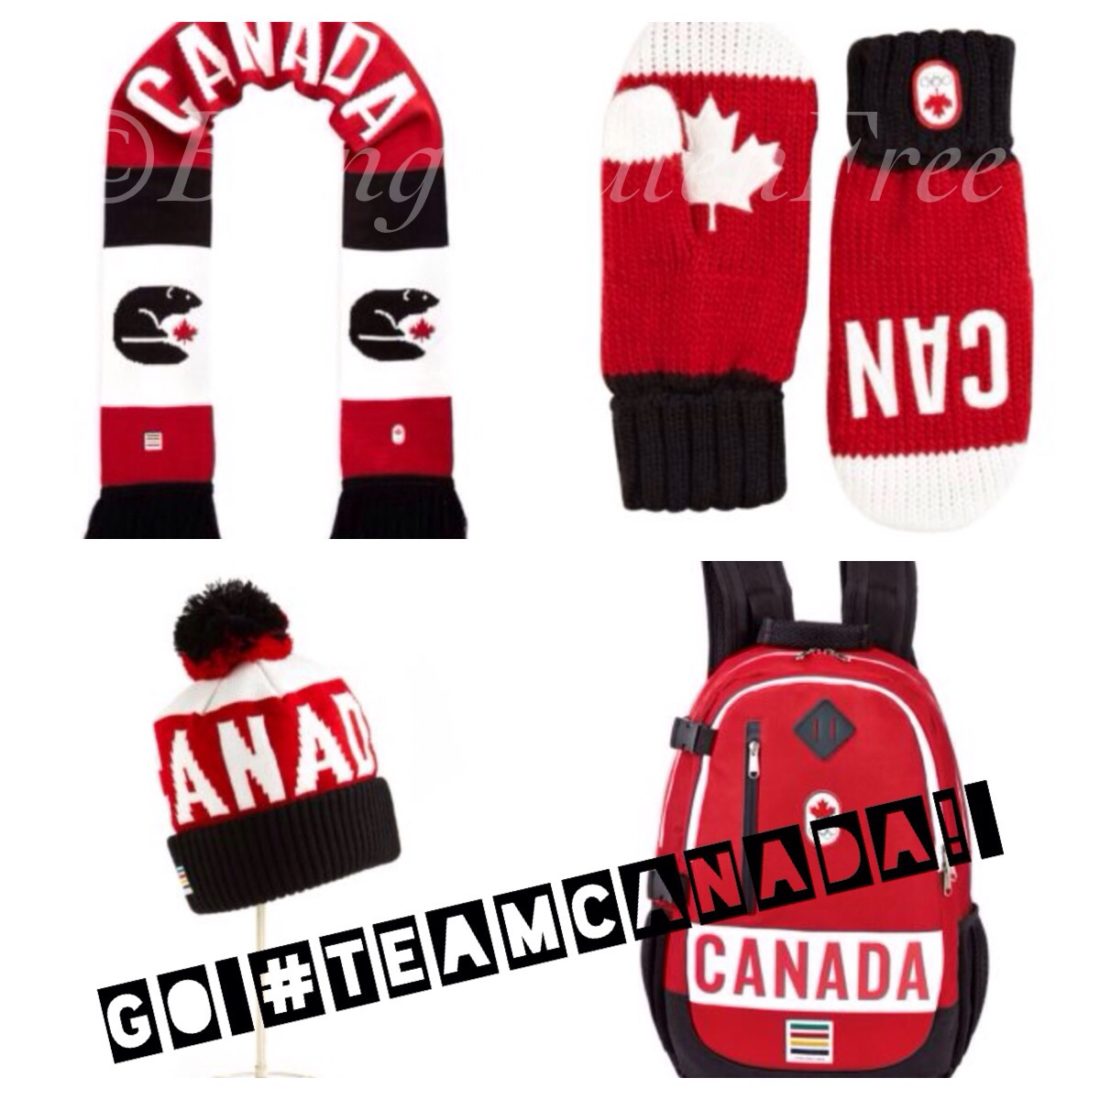 Yoplait Canadian Olympic gear